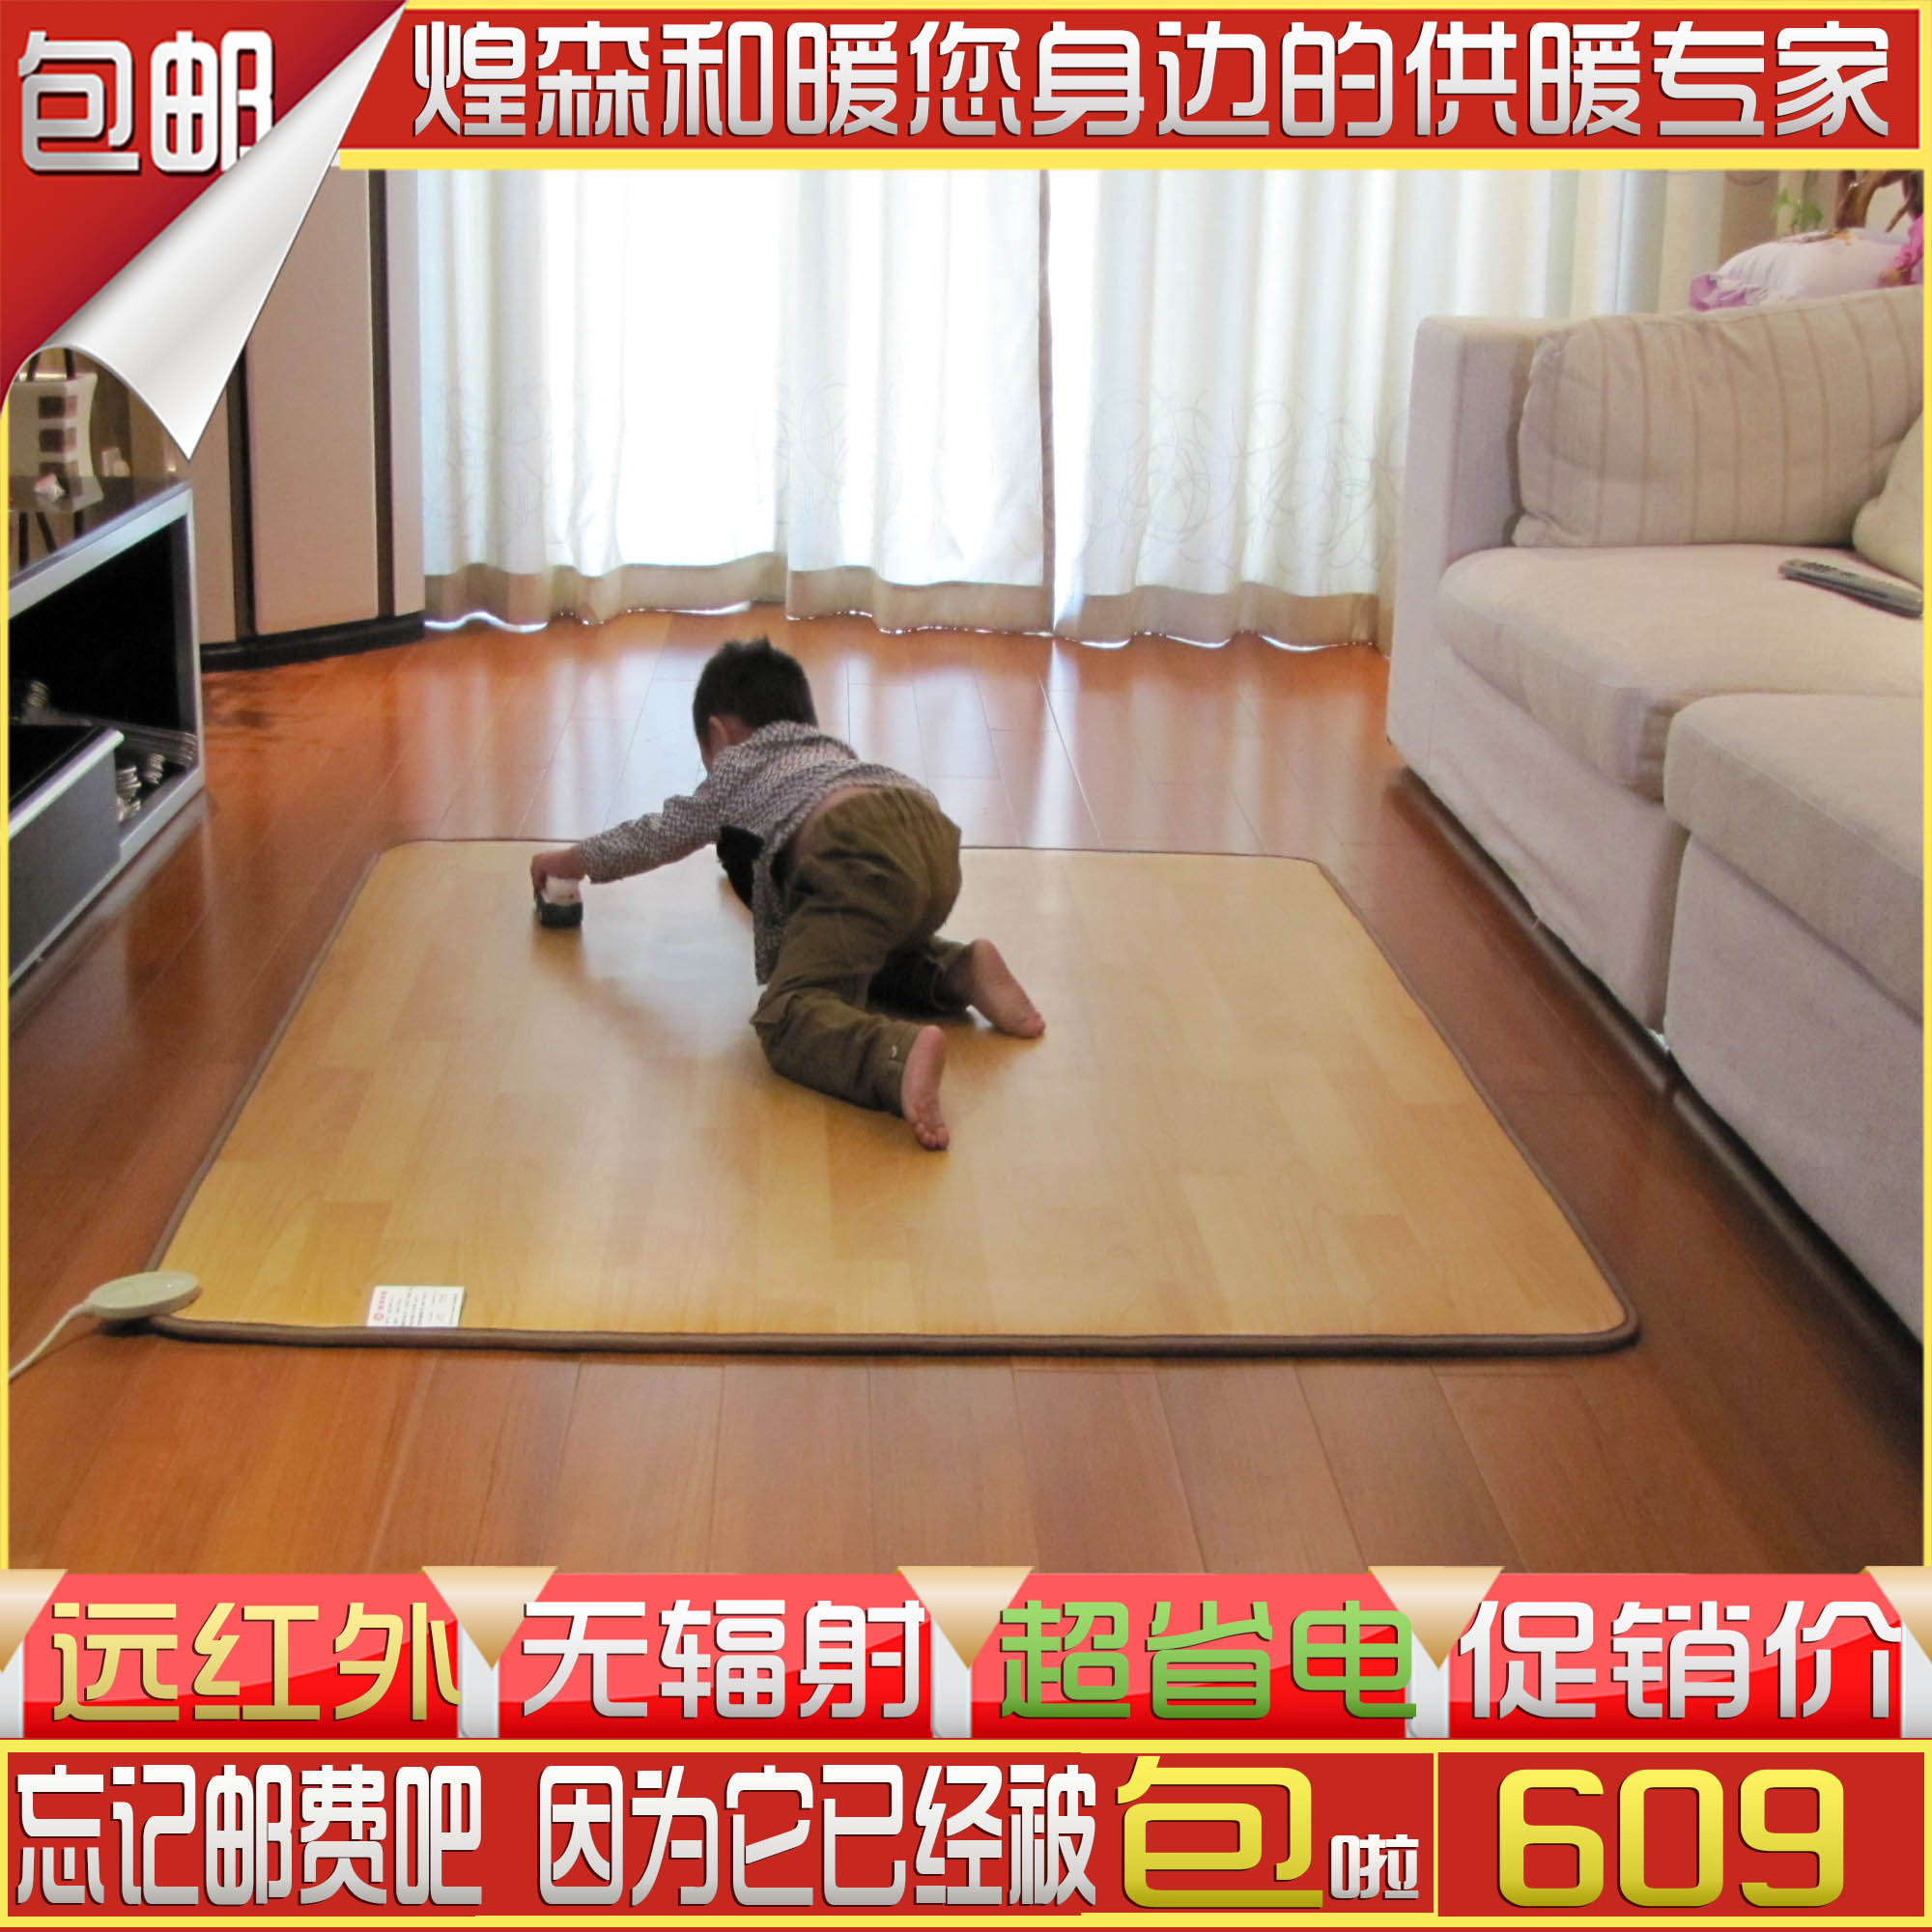 韩国碳晶地暖垫 电热地毯 电热垫 榻榻米 地暖垫 电热毯100*100